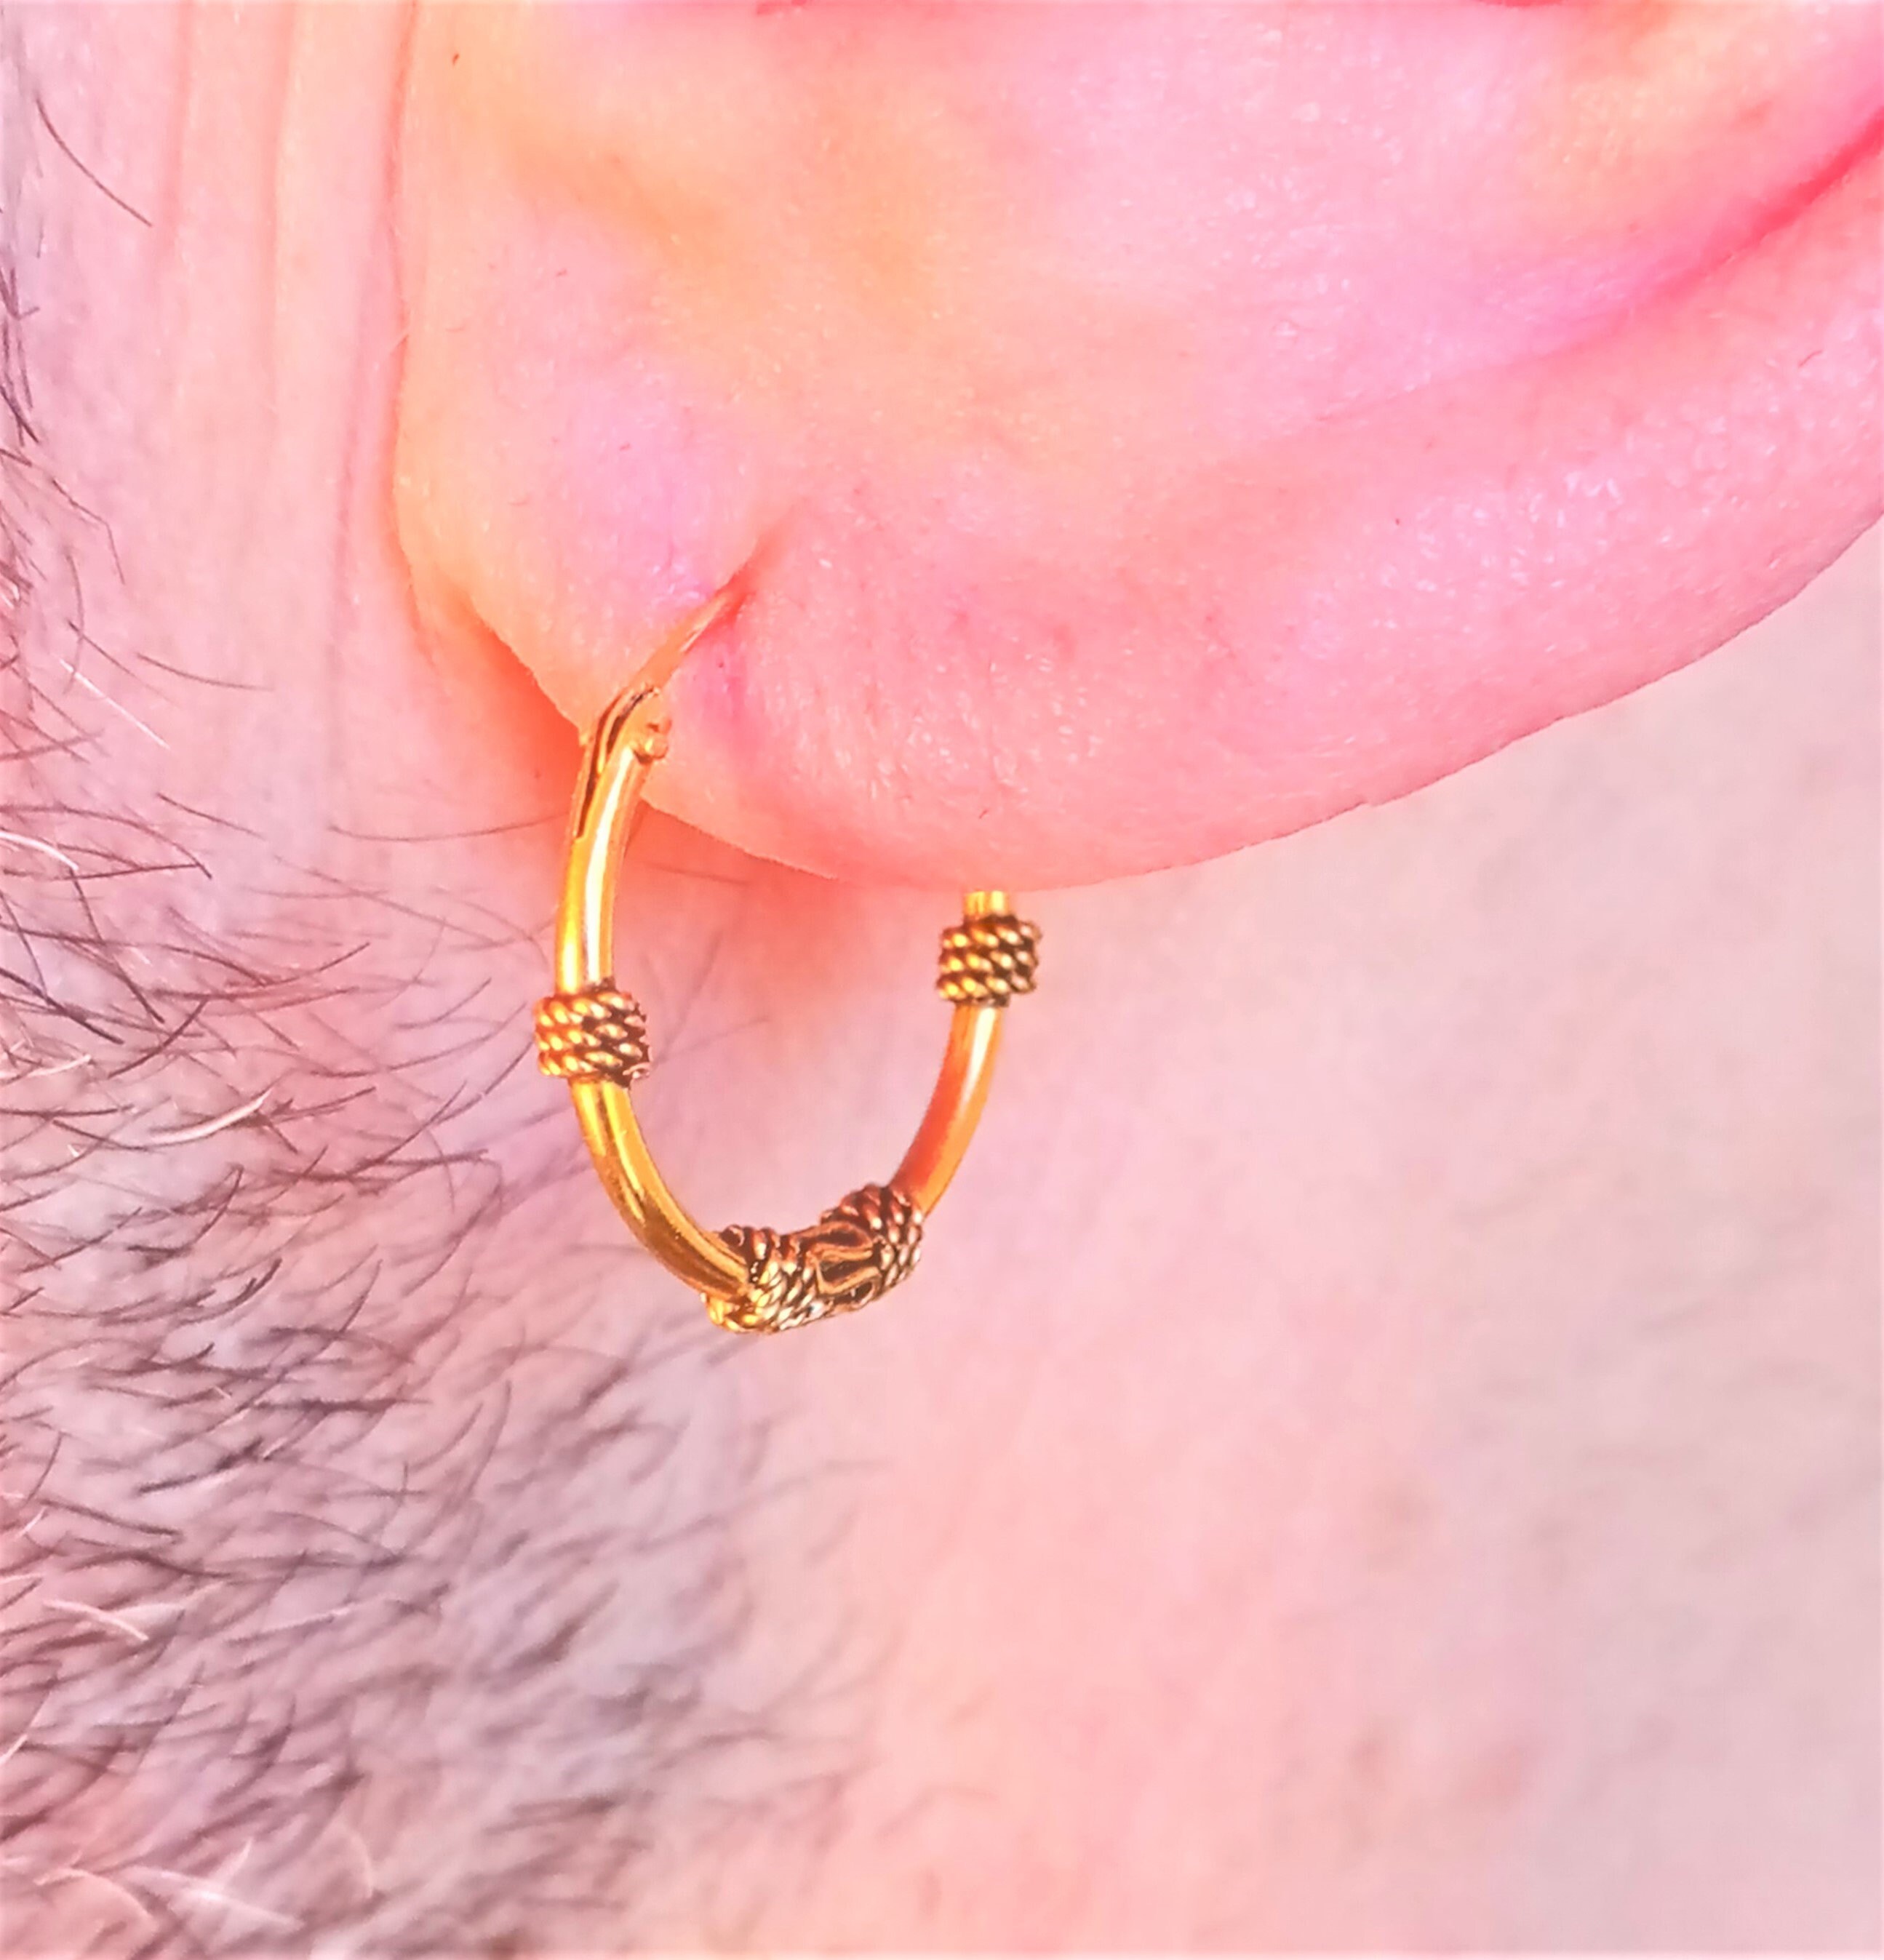 Pirate hoop earrings